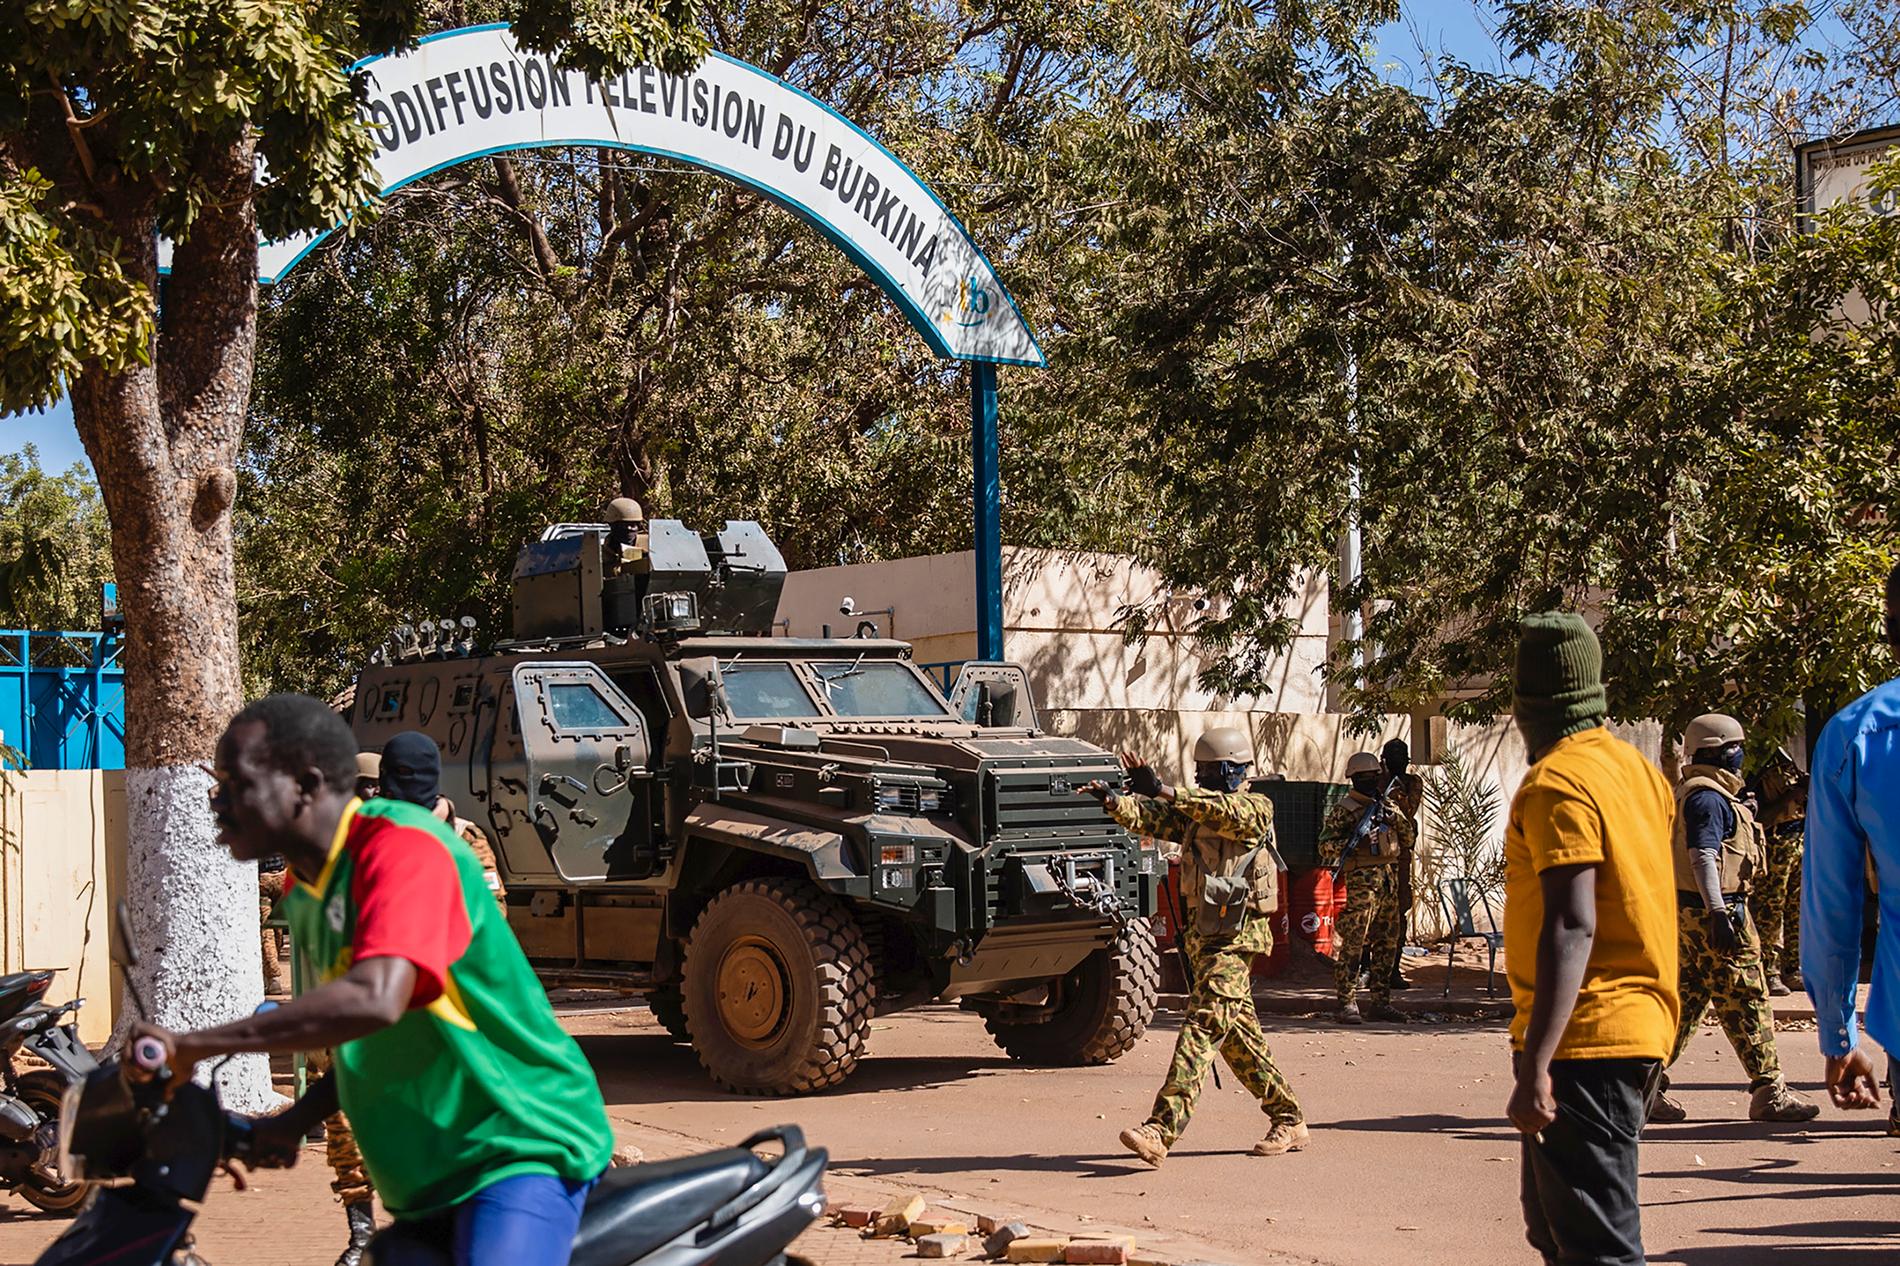 Över 200 människor har dödats av militären i Burkina Faso, enligt människorättsorganisationen Human Rights Watch (HRW). Soldaterna på bilden har inget med texten att göra. Arkivbild.